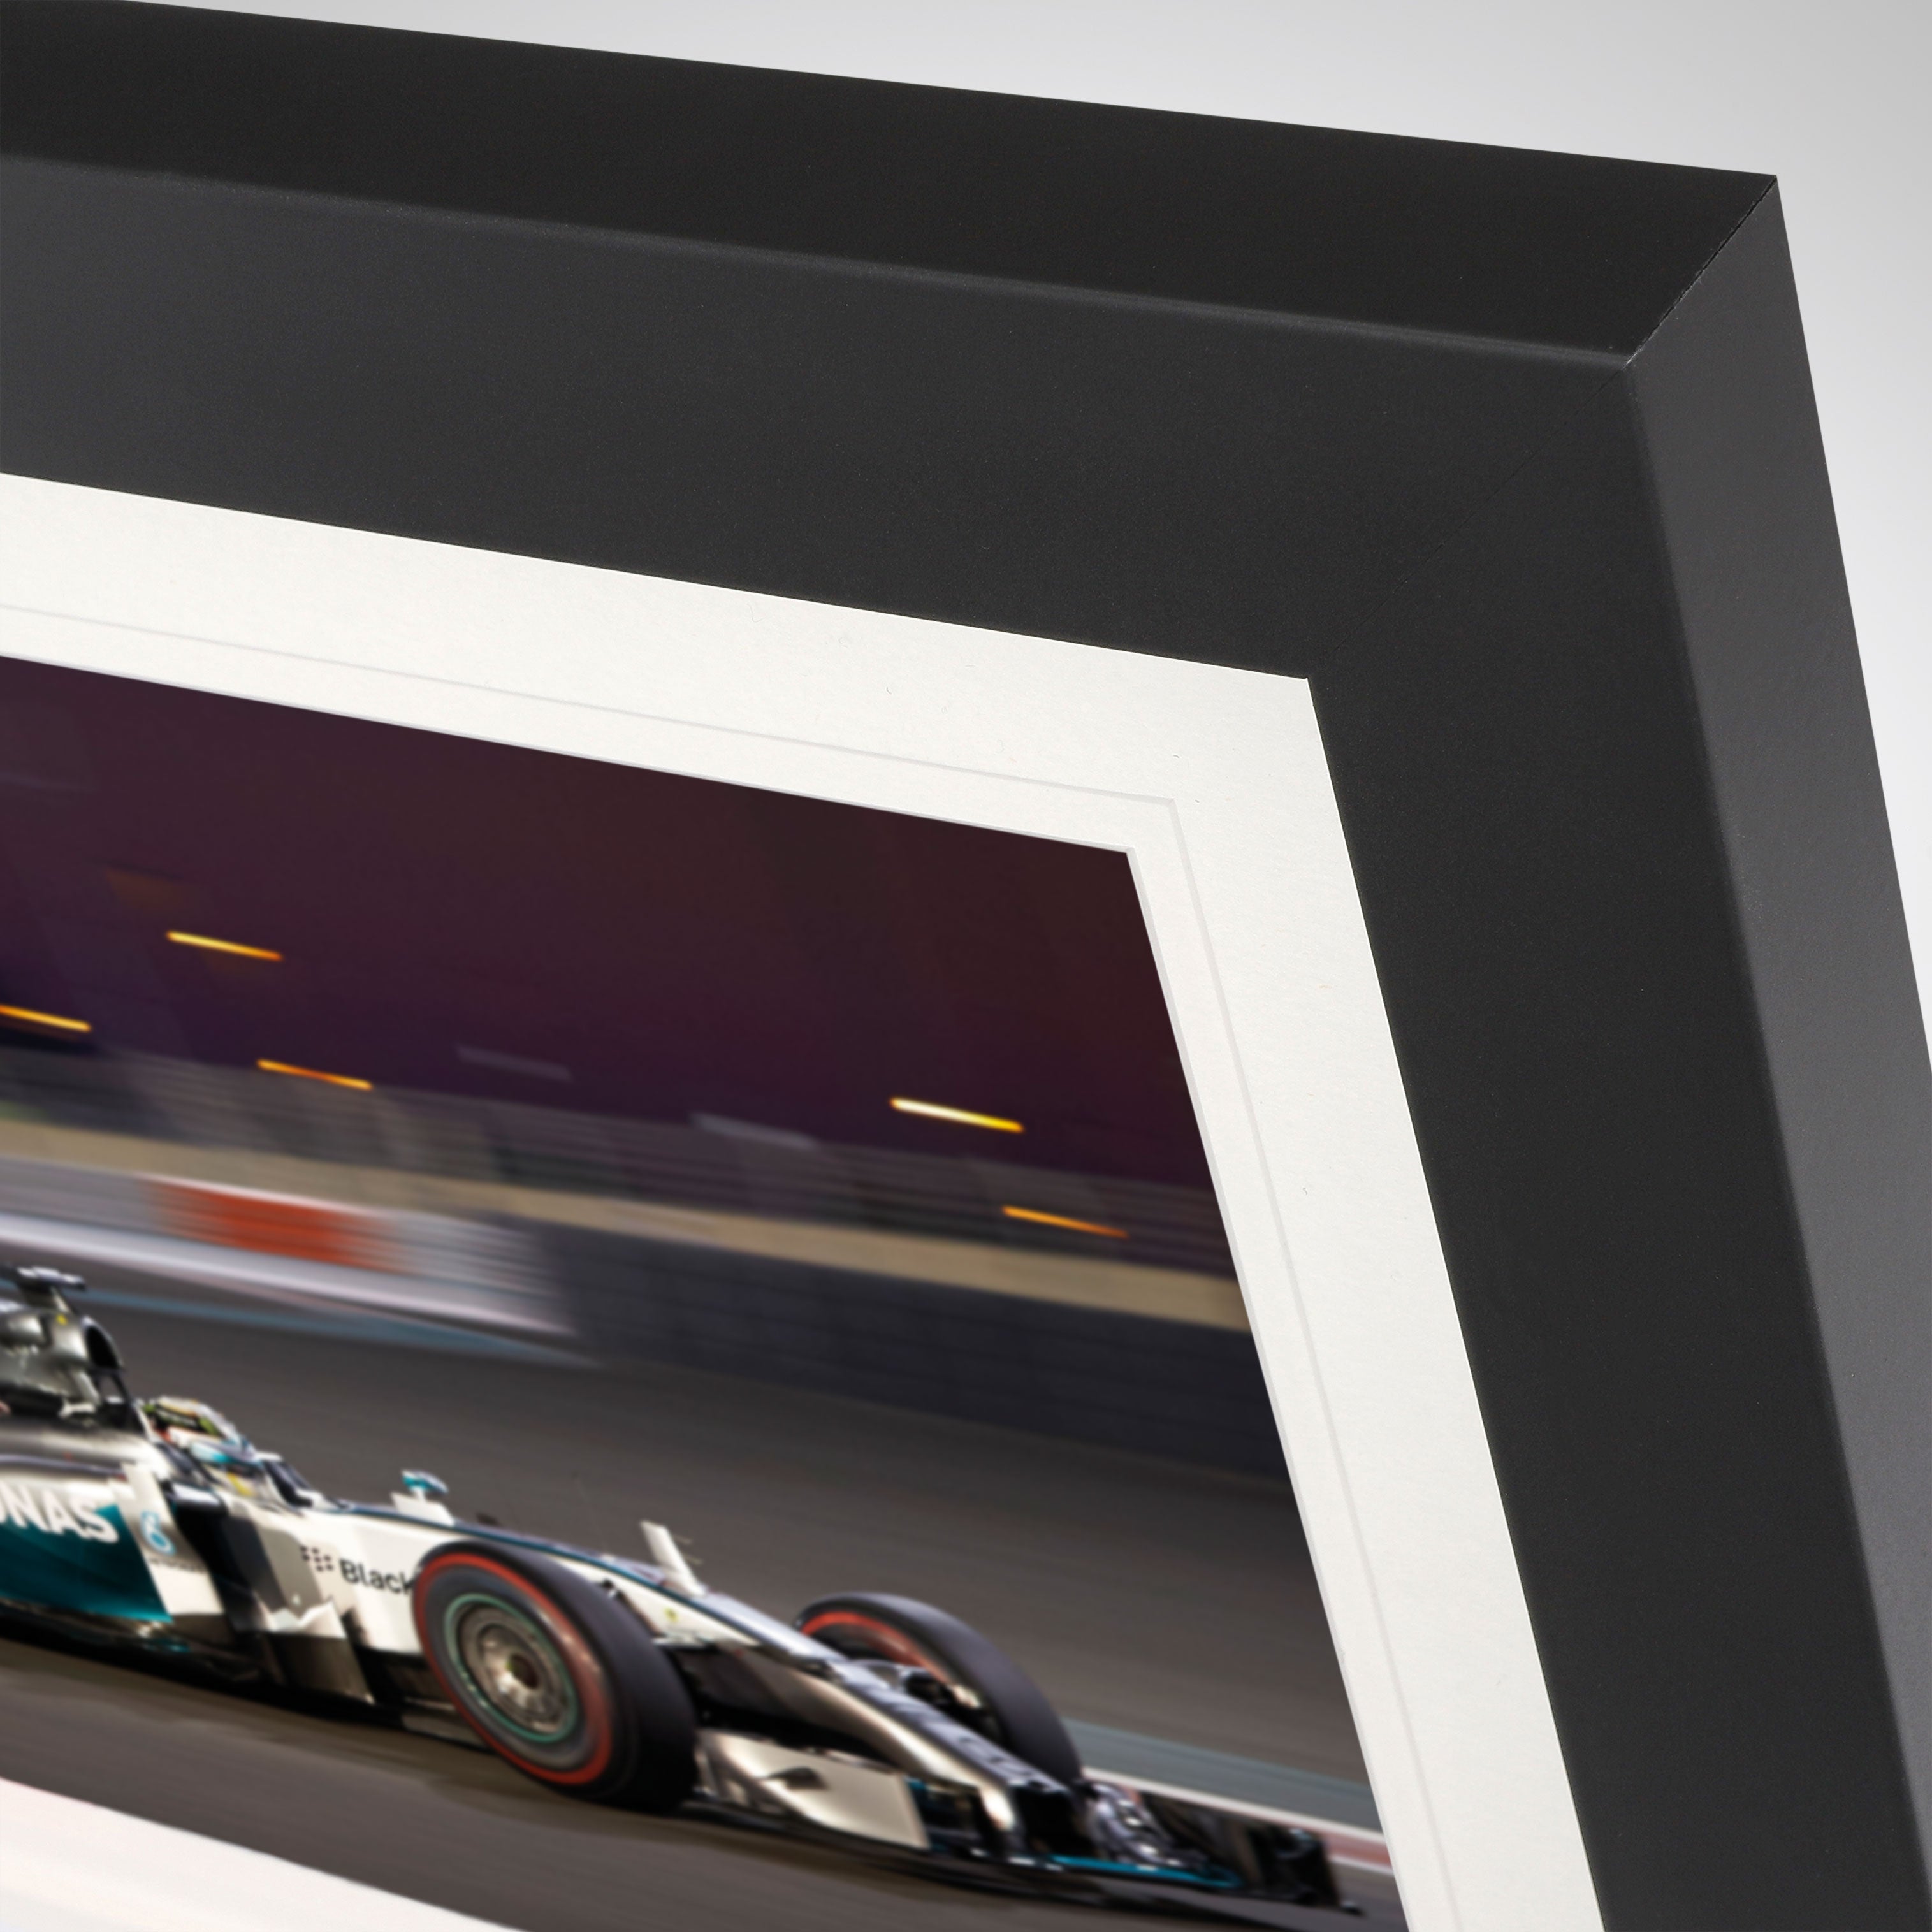 Limited Edition Lewis Hamilton 2014 Bodywork & Photo – Abu Dhabi GP